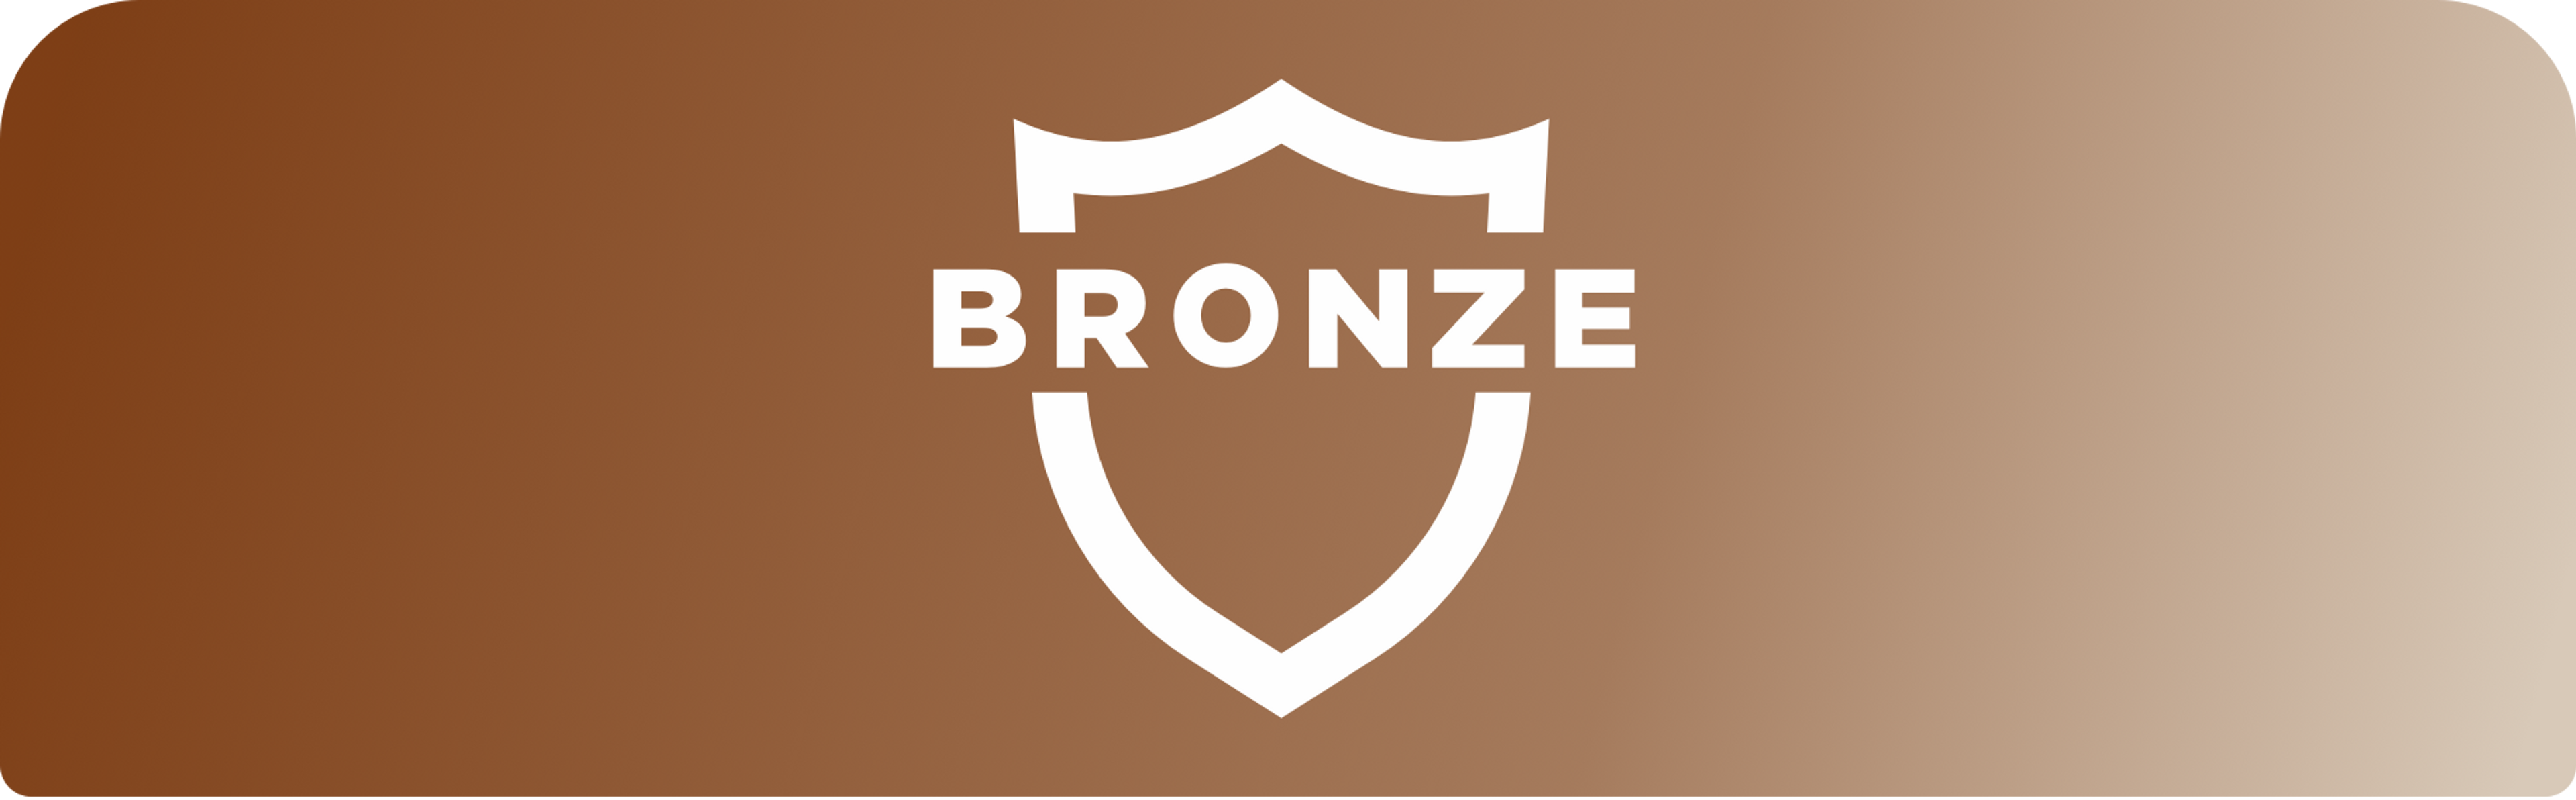 Image au fond marron avec icône blanche de bouclier et le mot « BRONZE » centré en lettres majuscules